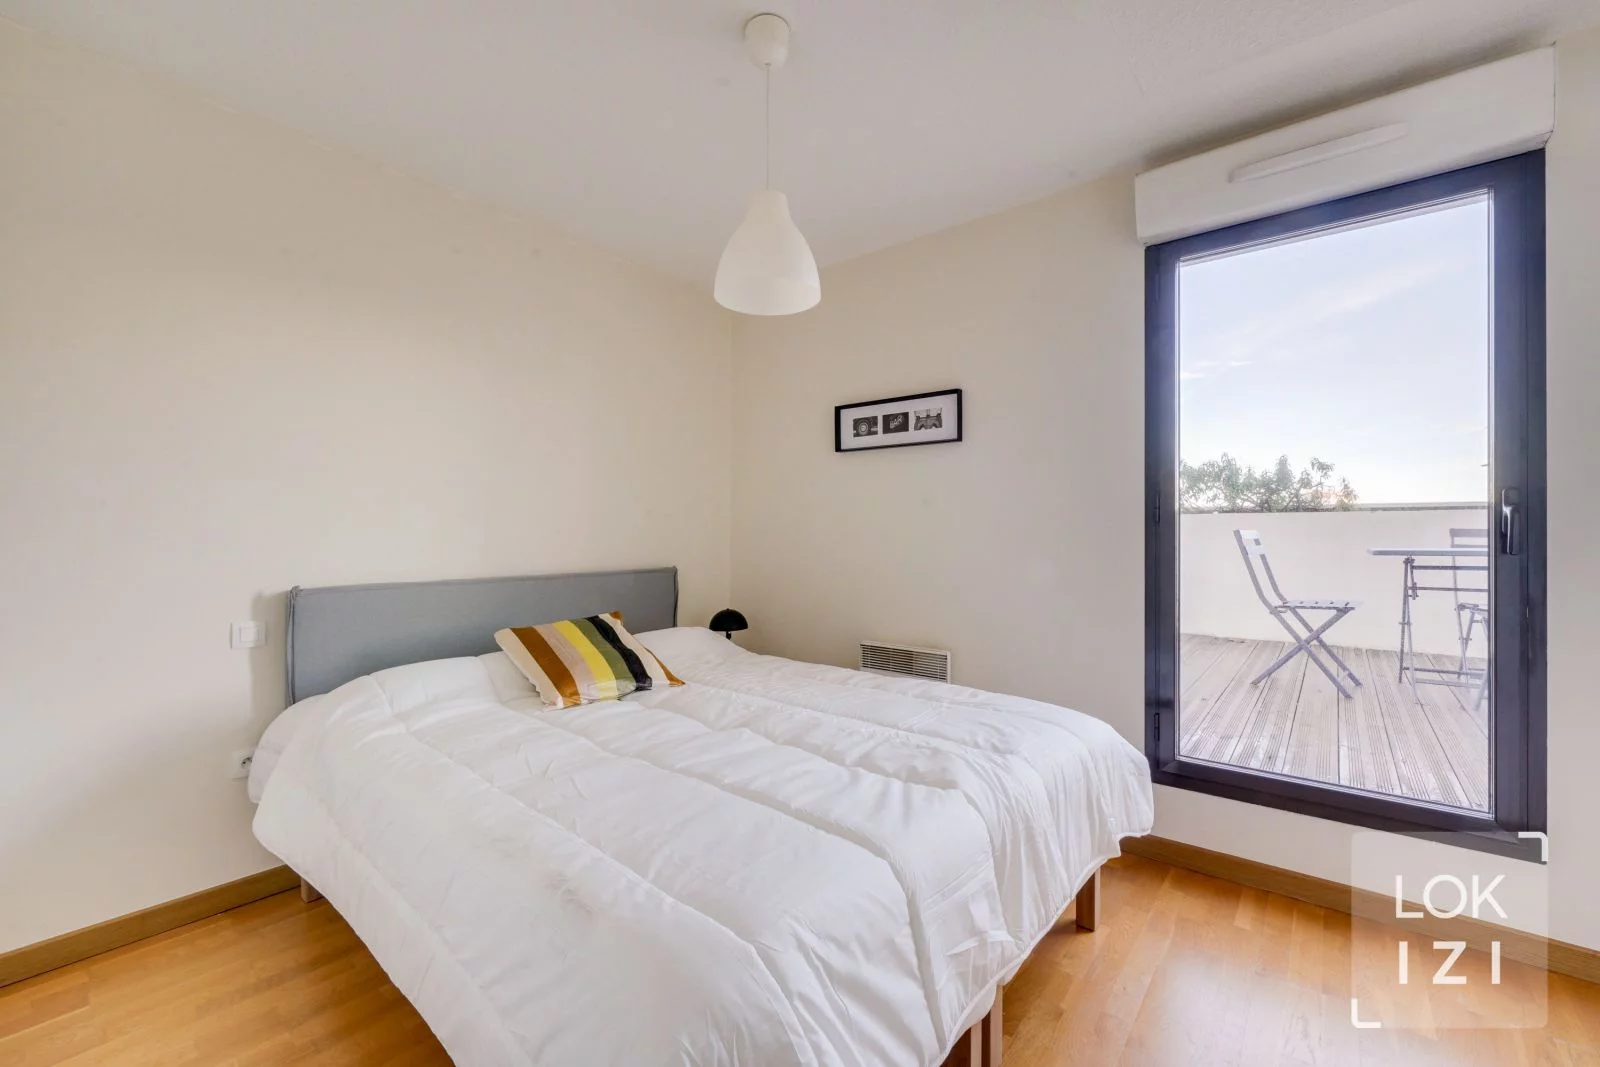 Location appartement meublé 3 pièces 55m² (Bordeaux - Chartrons Grand Parc)